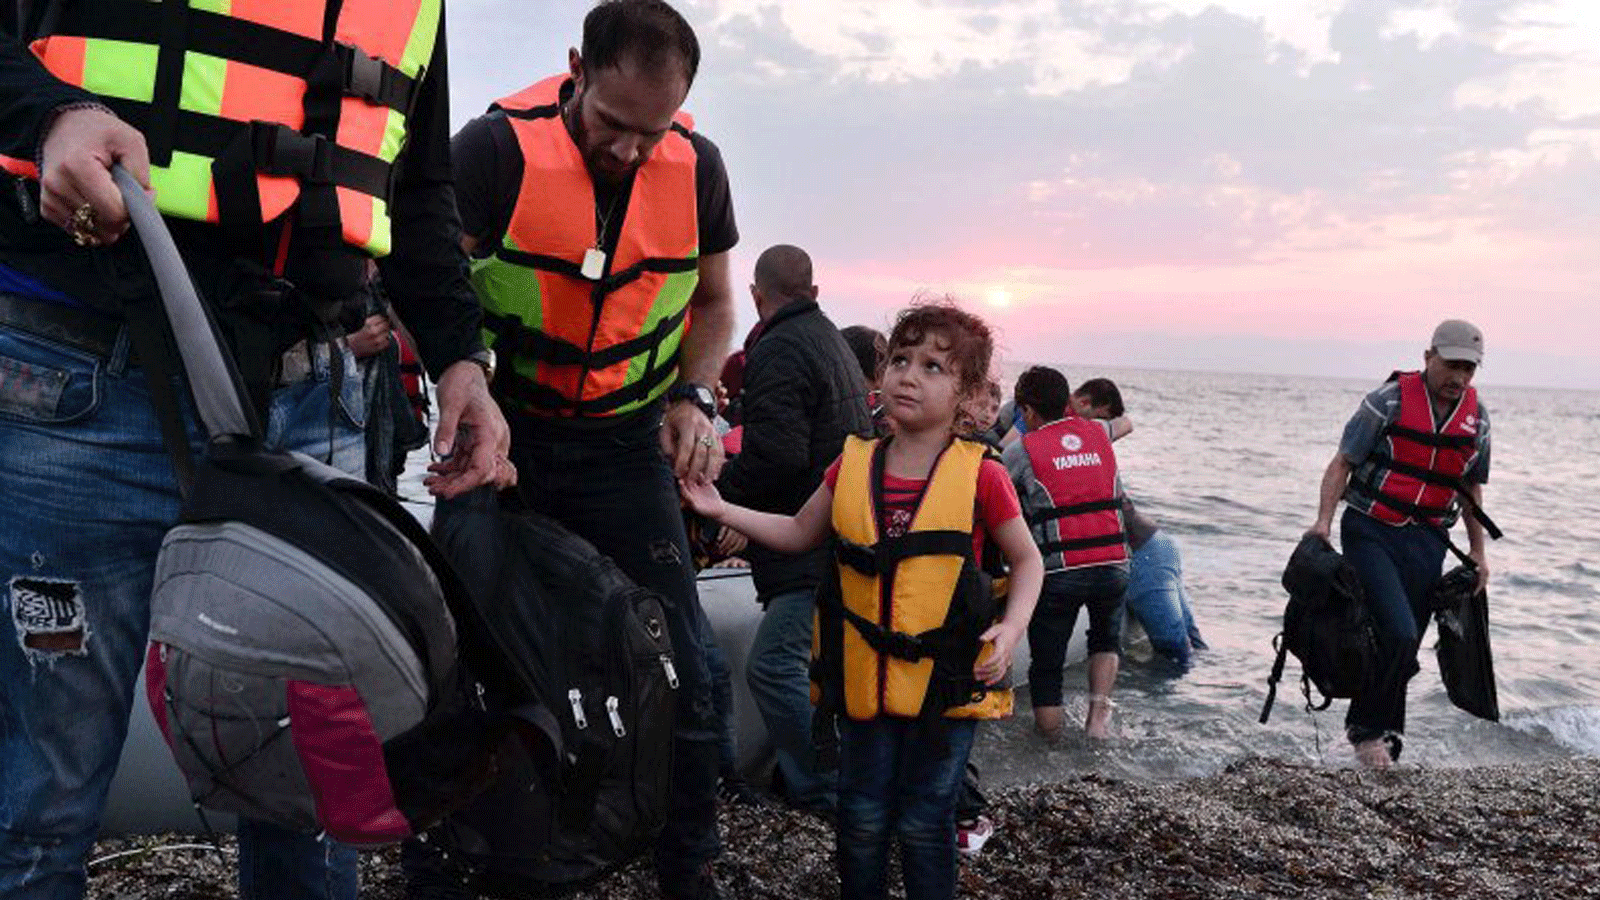 سوريون ينزلون في جزيرة ليسبوس، اليونان، في وقتٍ مبكر يوم 18 يونيو / حزيران 2015.